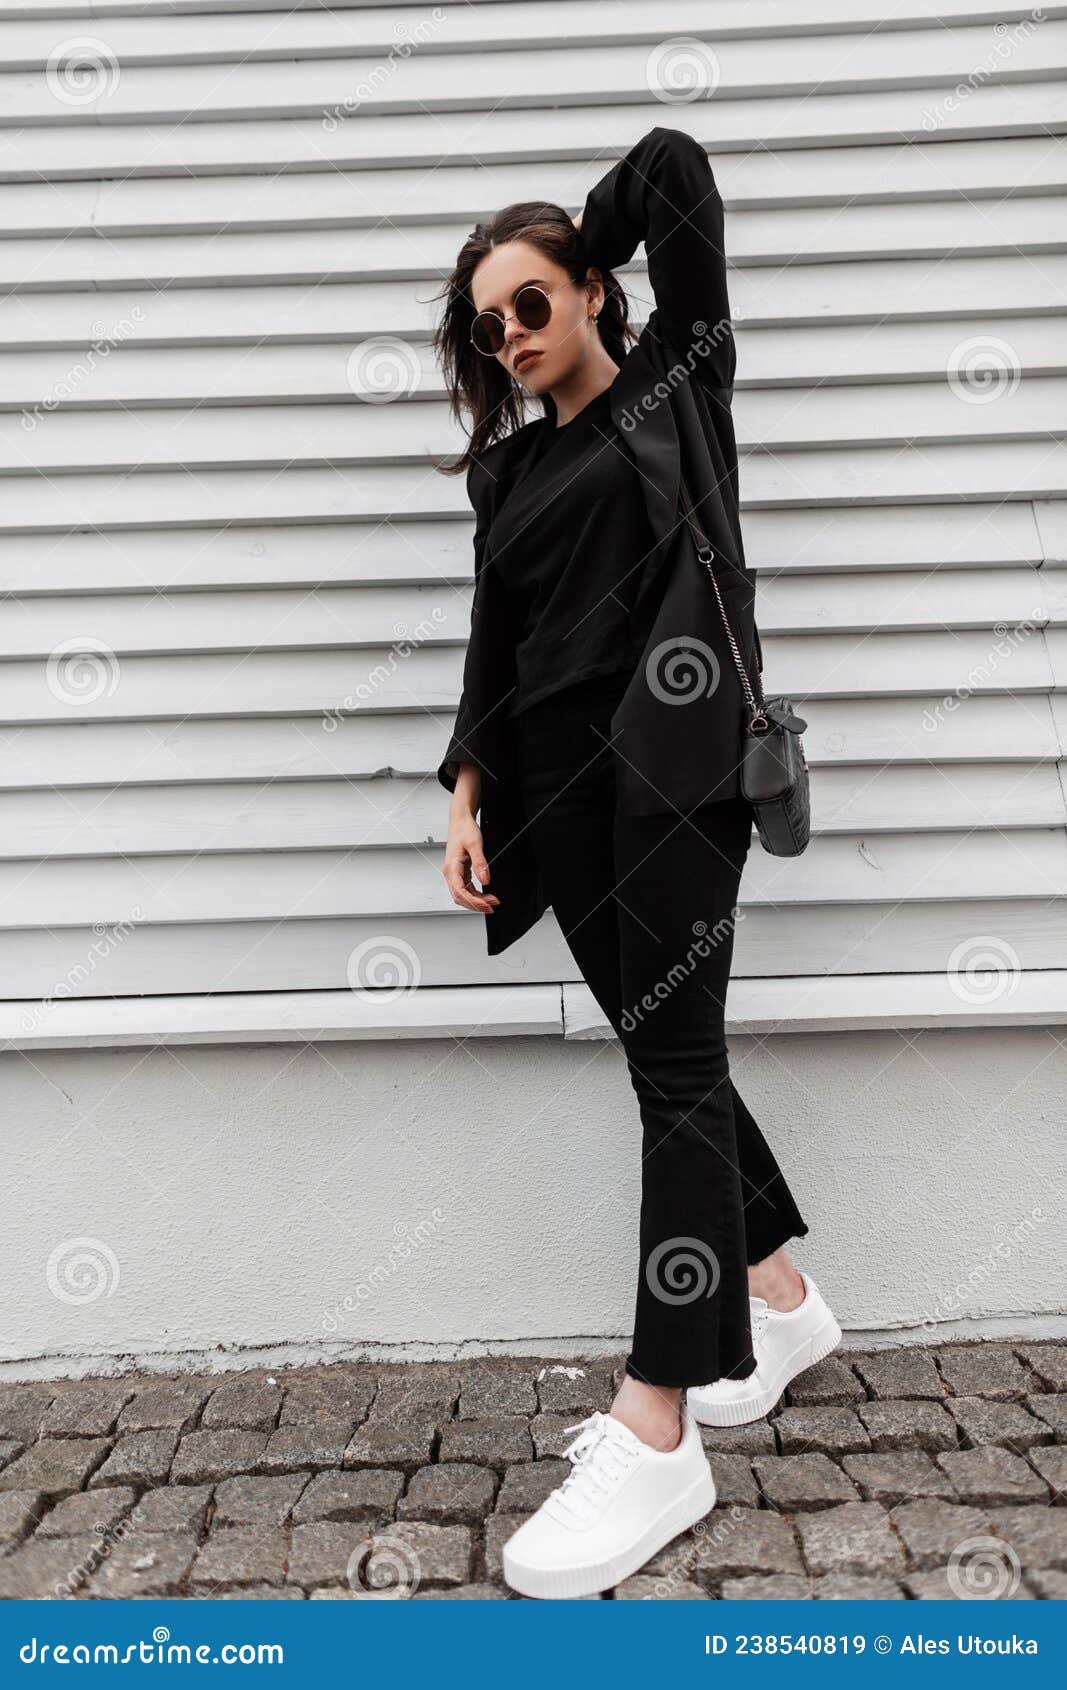 Joven Elegante Con Ropa De Moda De Negra Con Gafas De Sol En Zapatillas De Moda Blanca Bolsos De Cuero Cerca Imagen de archivo - Imagen de zapatos: 238540819